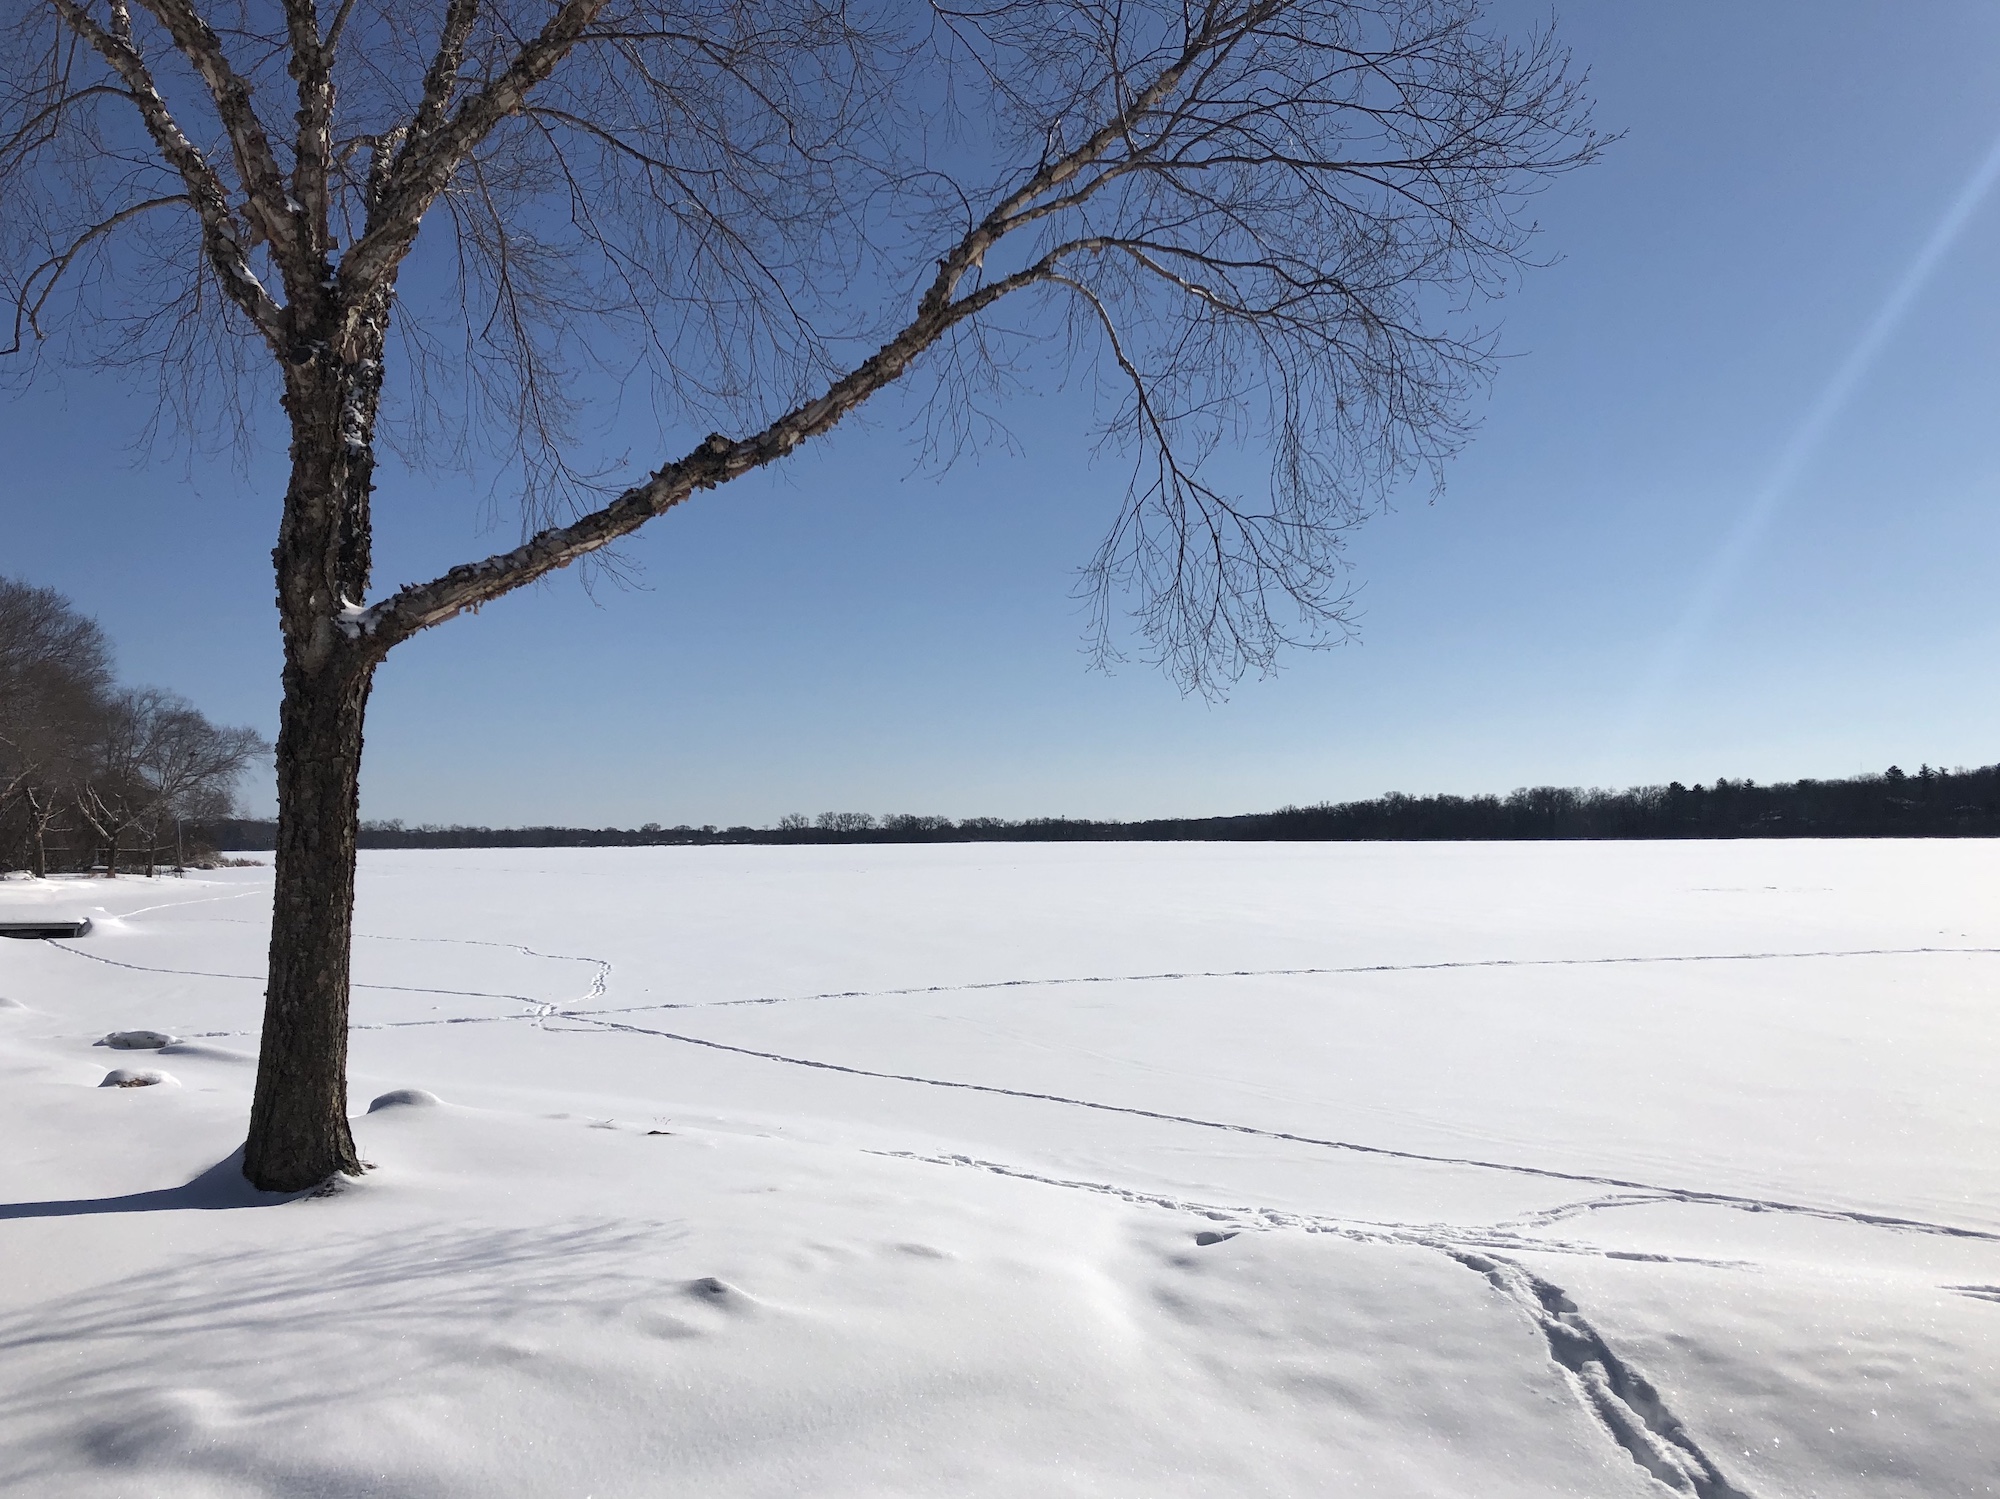 Lake Wingra on February 18, 2019.